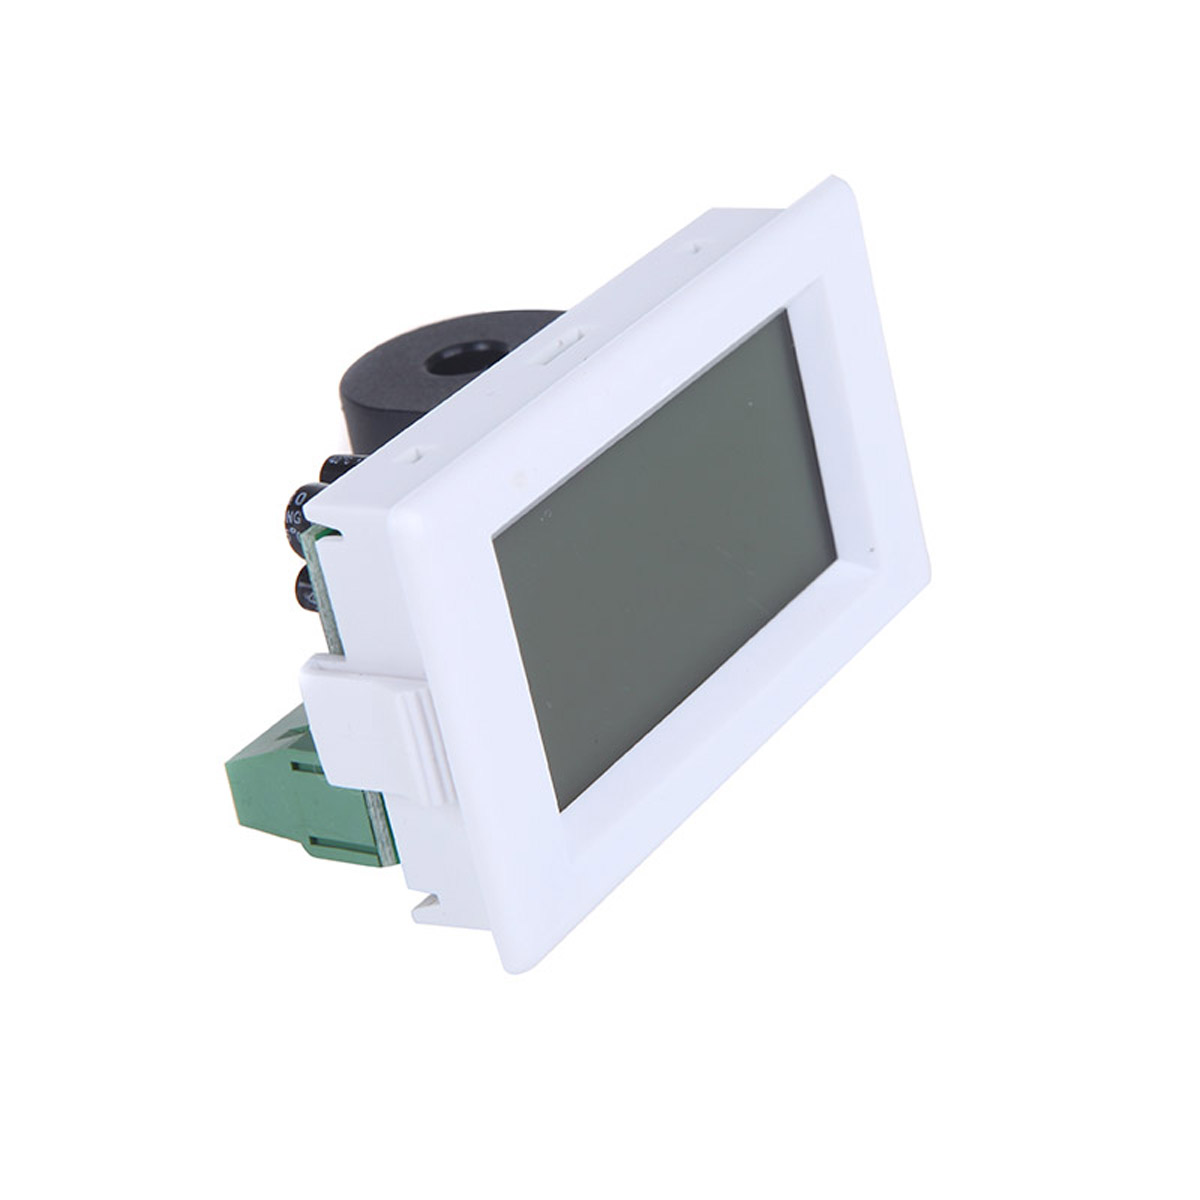 D85-2041-LCD-Display-Digital-AC100-300V-50A-Ammeter-Voltmeter-Meter-Tester-Amp-Panel-Meter-With-Blue-1443865-3